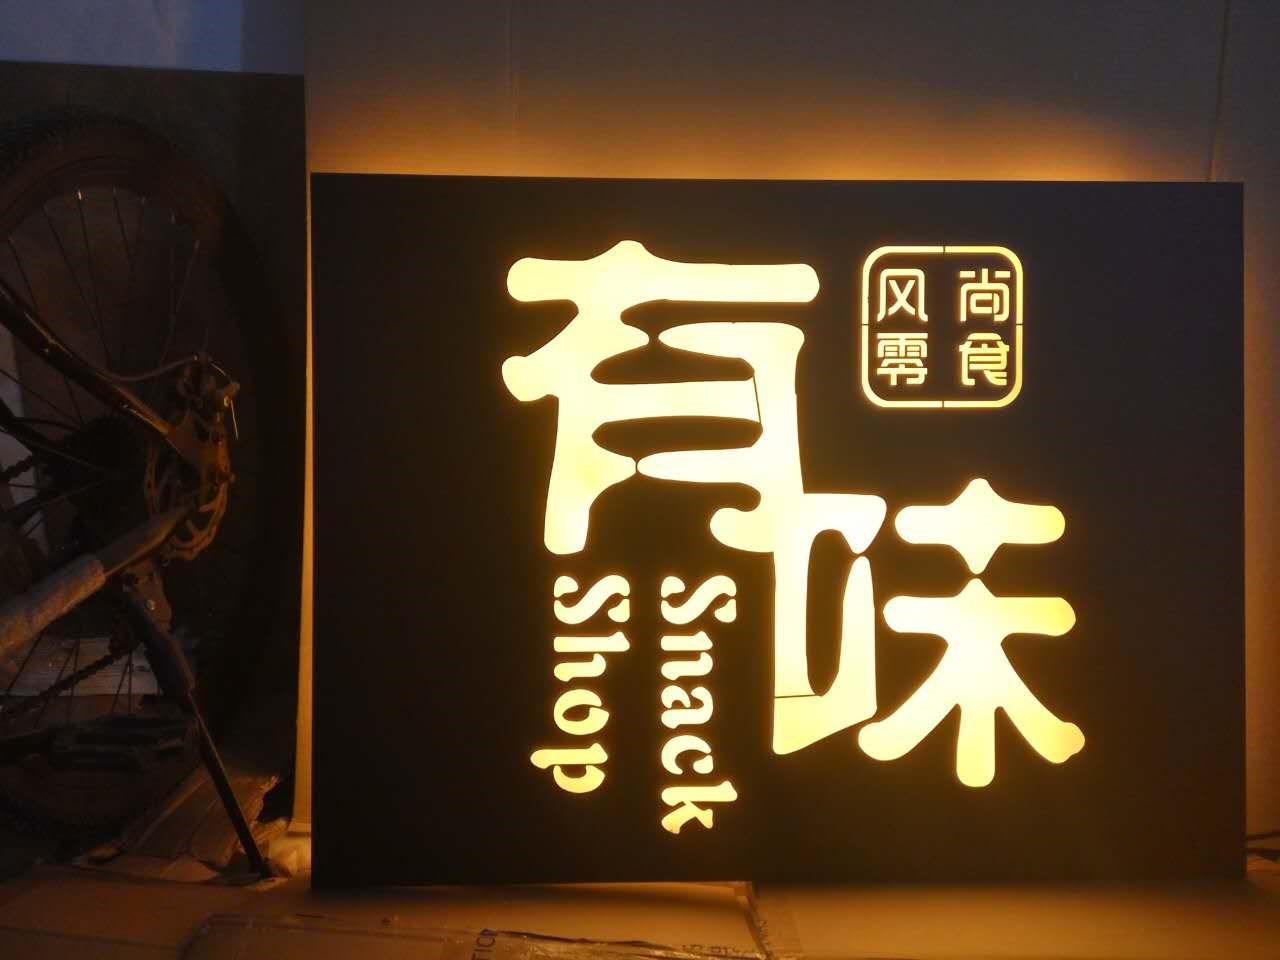 烤漆灯箱黑铁镂空设计生锈背发光字招牌雕刻铁板门头个性创意制作